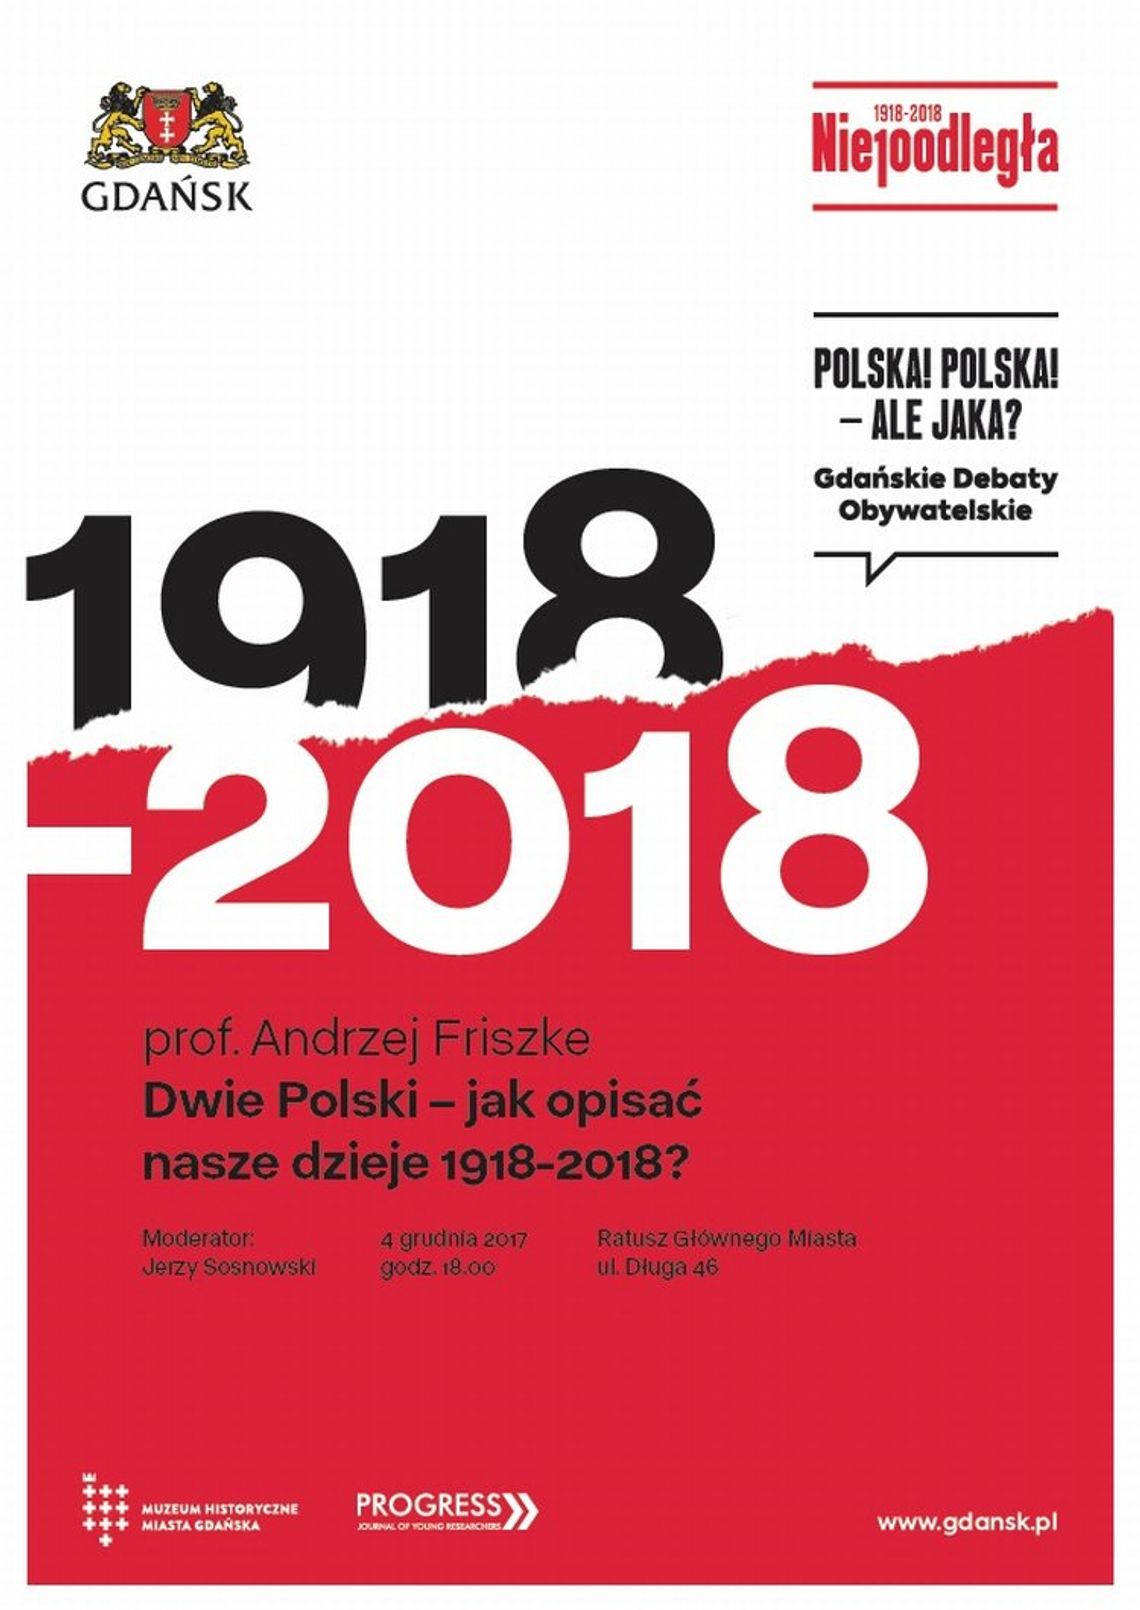 Jak opisać dzieje Polski z 1918 r. i 1989 r.?